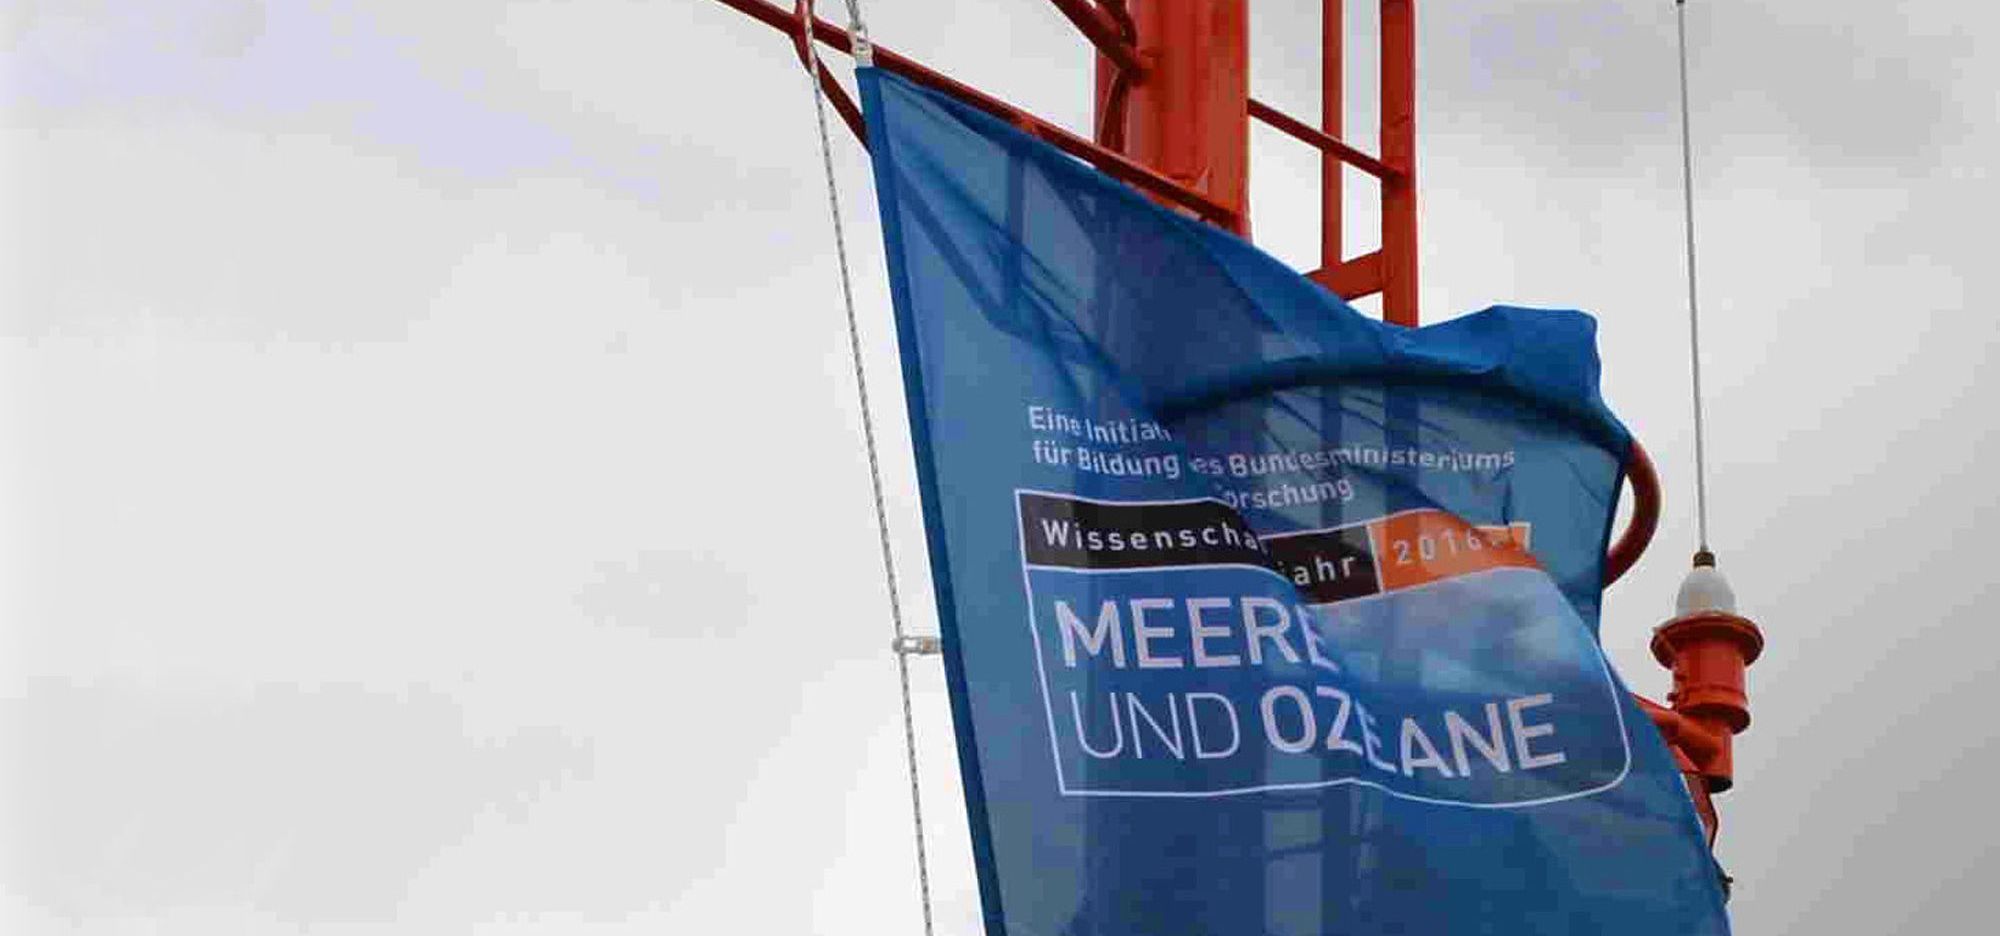 Eine Flagge mit der Aufschrift "Wissenschaftsjahr 2016: Meere und Ozeane" am Mat des Forschungsschiffs.